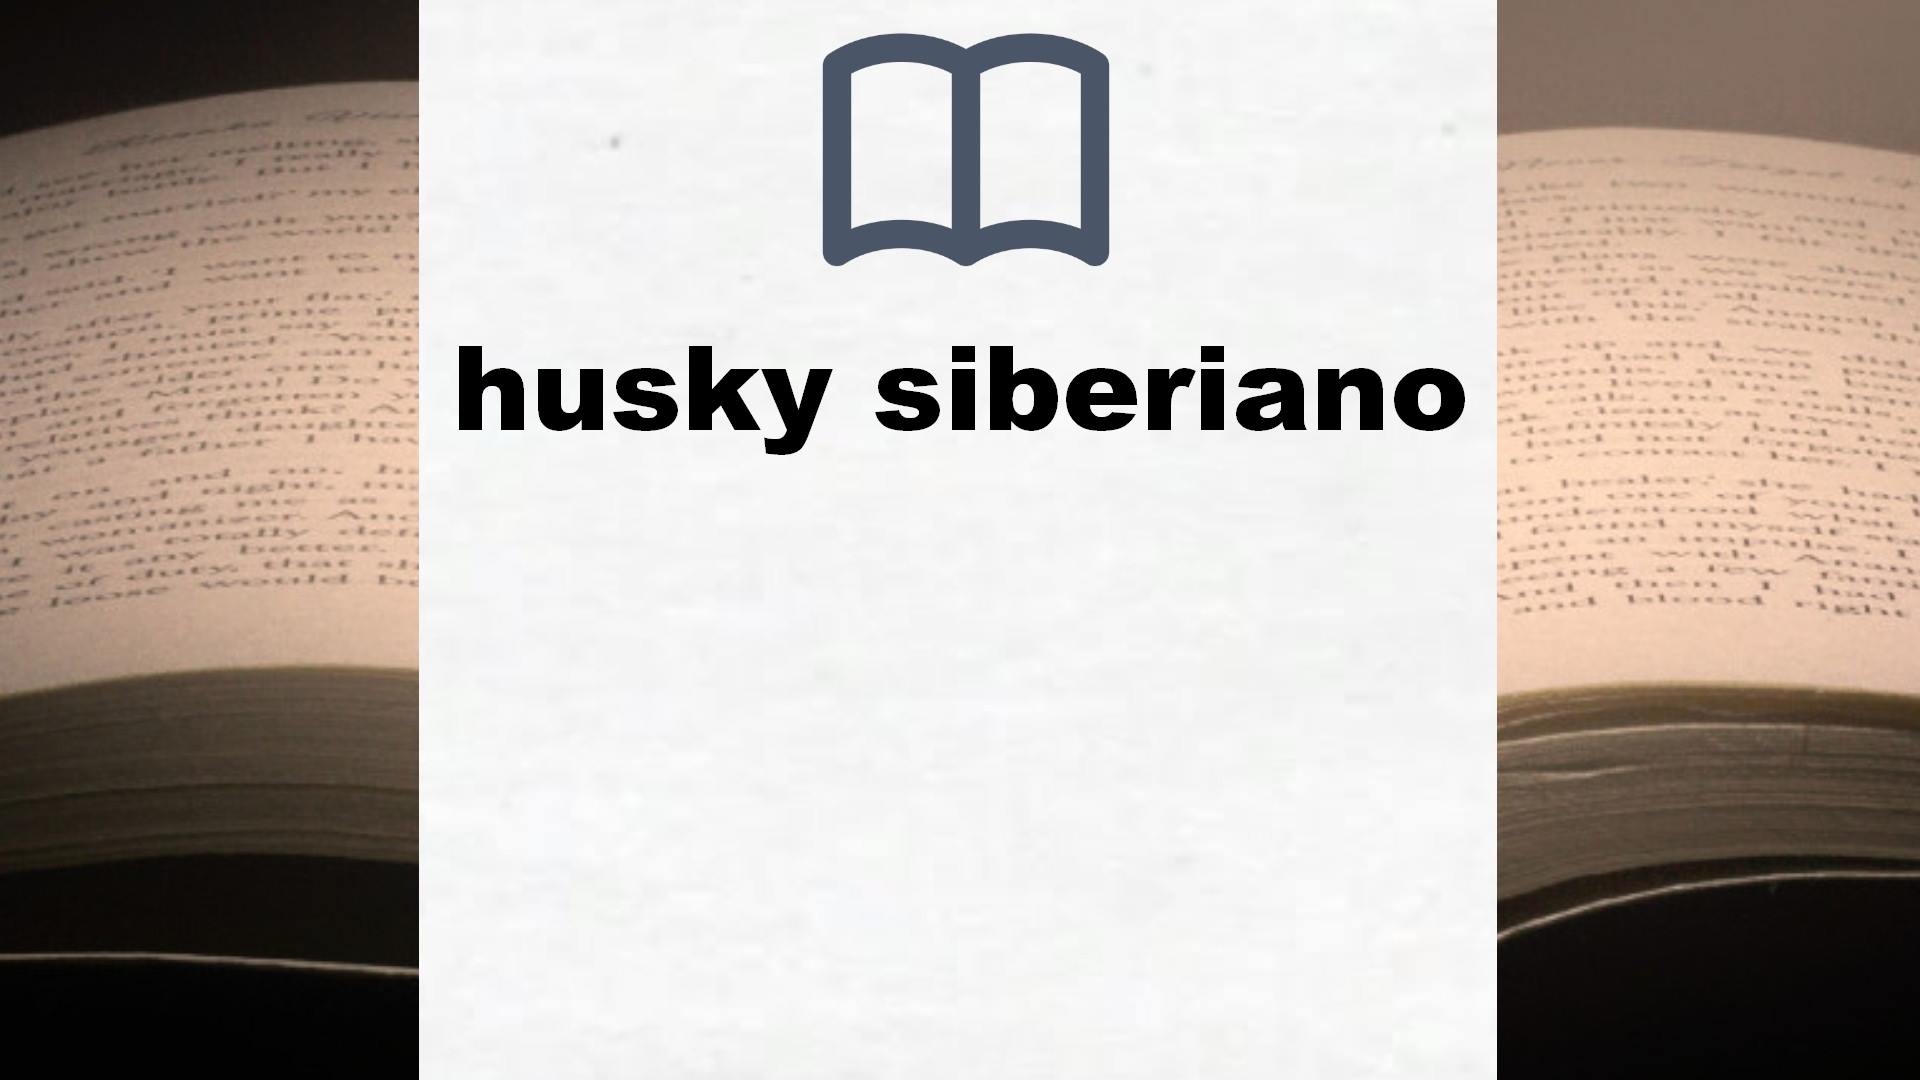 Libros sobre husky siberiano